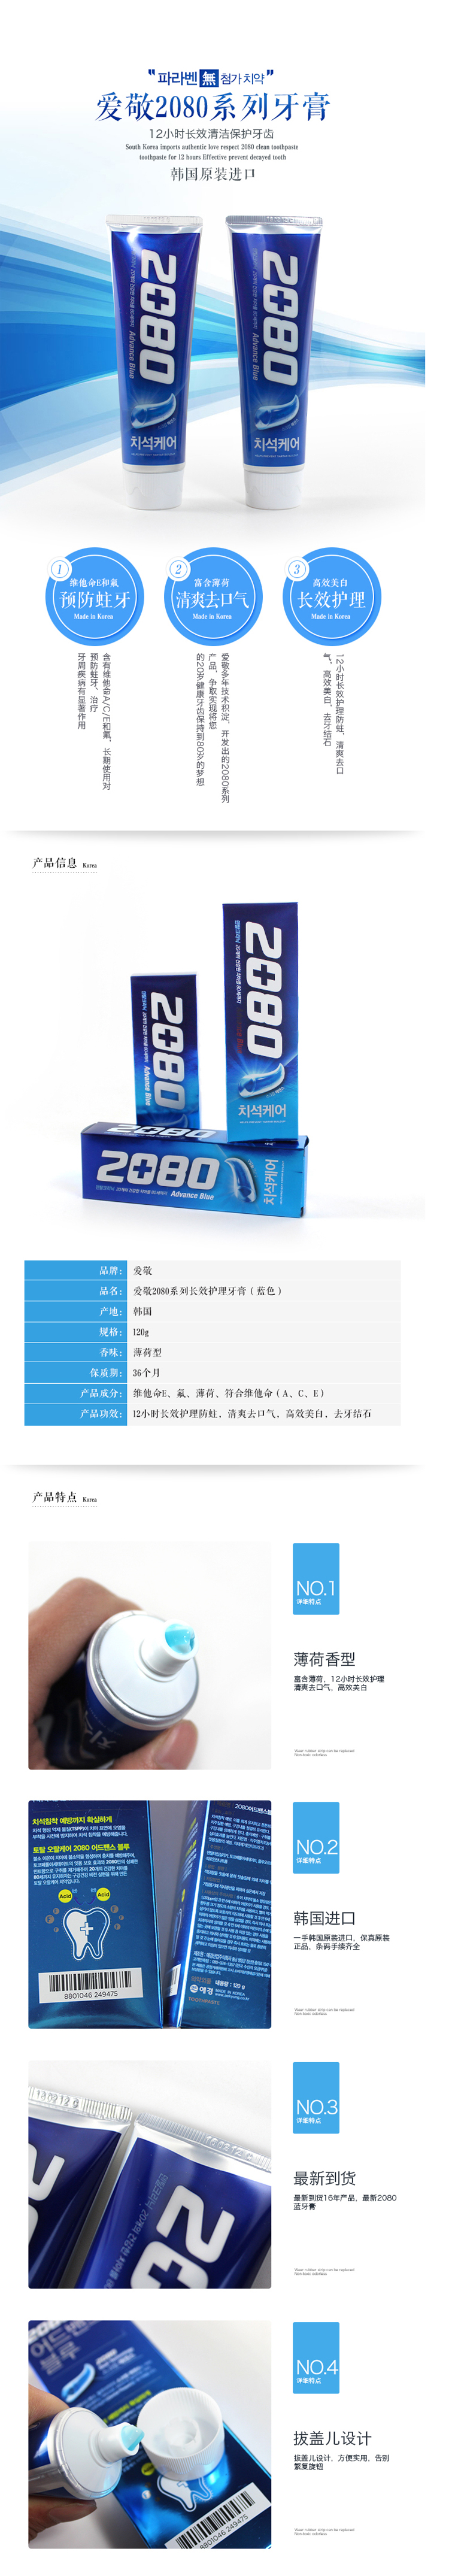 【韩国馆】(包邮)韩国进口正品 爱敬2080牙膏 12小时洁净牙膏 有效防蛀防虫牙140ml